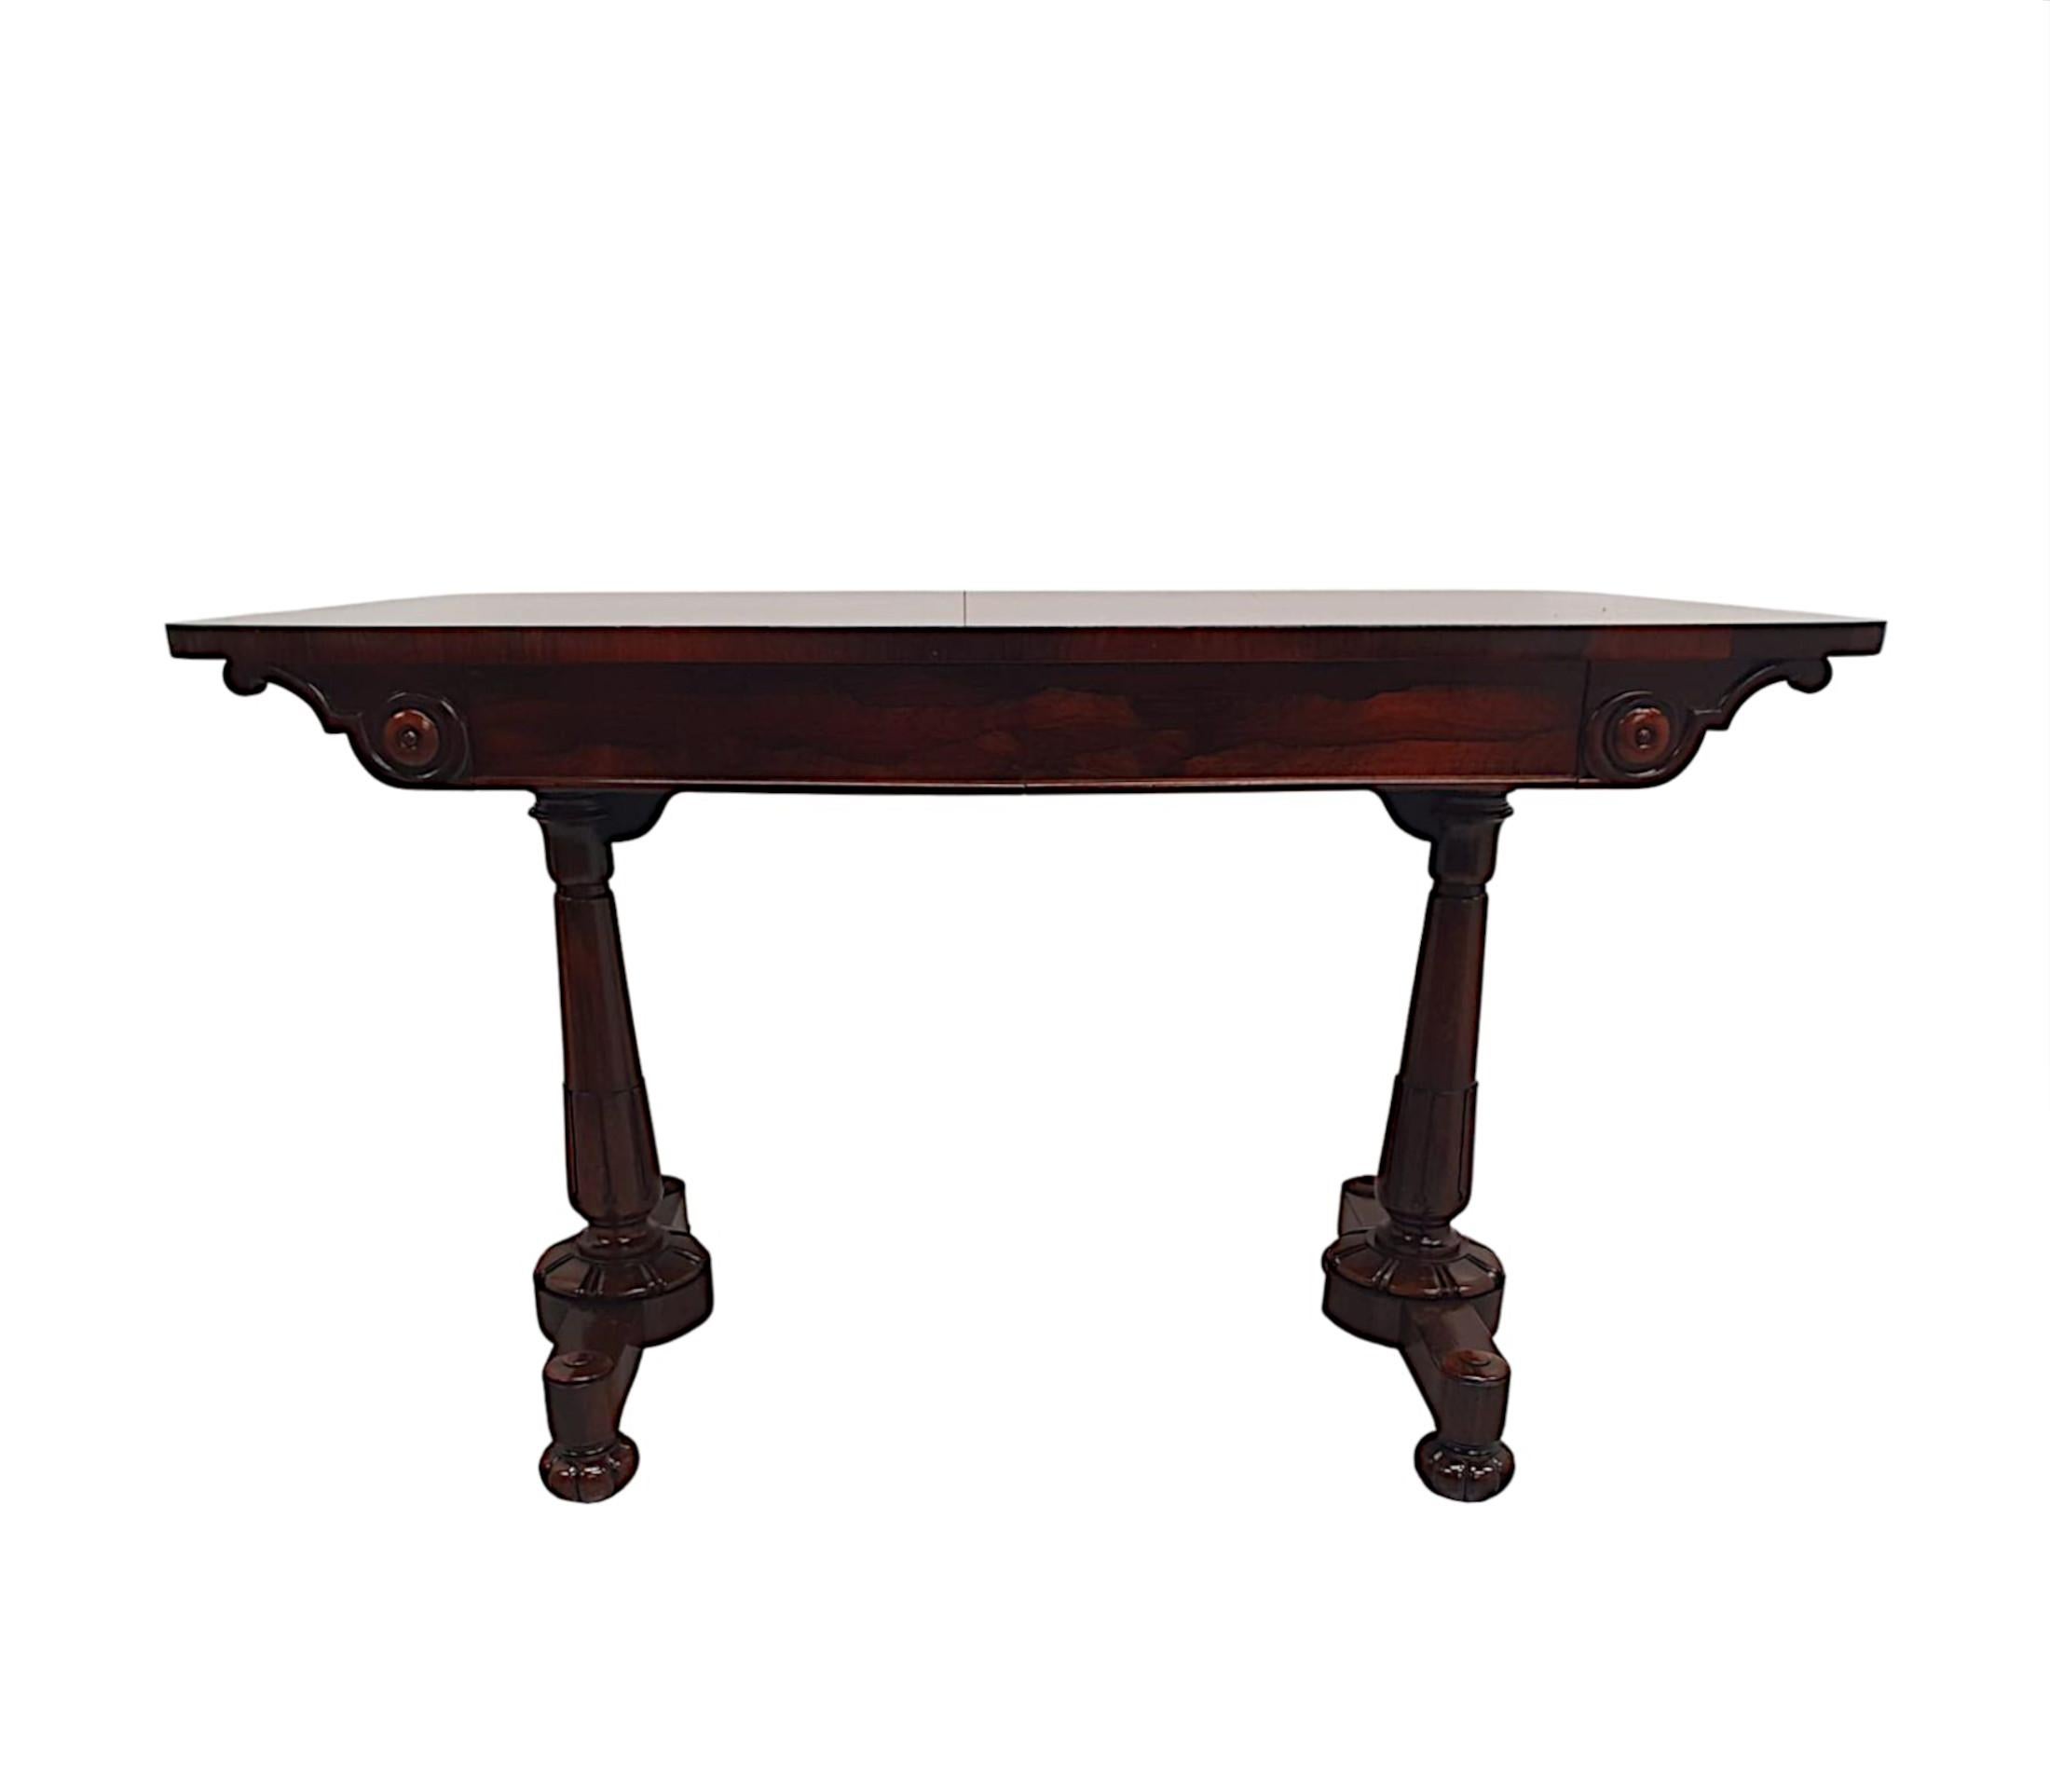 Une très belle table de bibliothèque en bois fruitier du 19e siècle, fabriquée à Londres par Holland, d'une qualité exceptionnelle et fabuleusement sculptée à la main, avec une patine d'une grande richesse.  Le plateau bien figuré, finement grainé